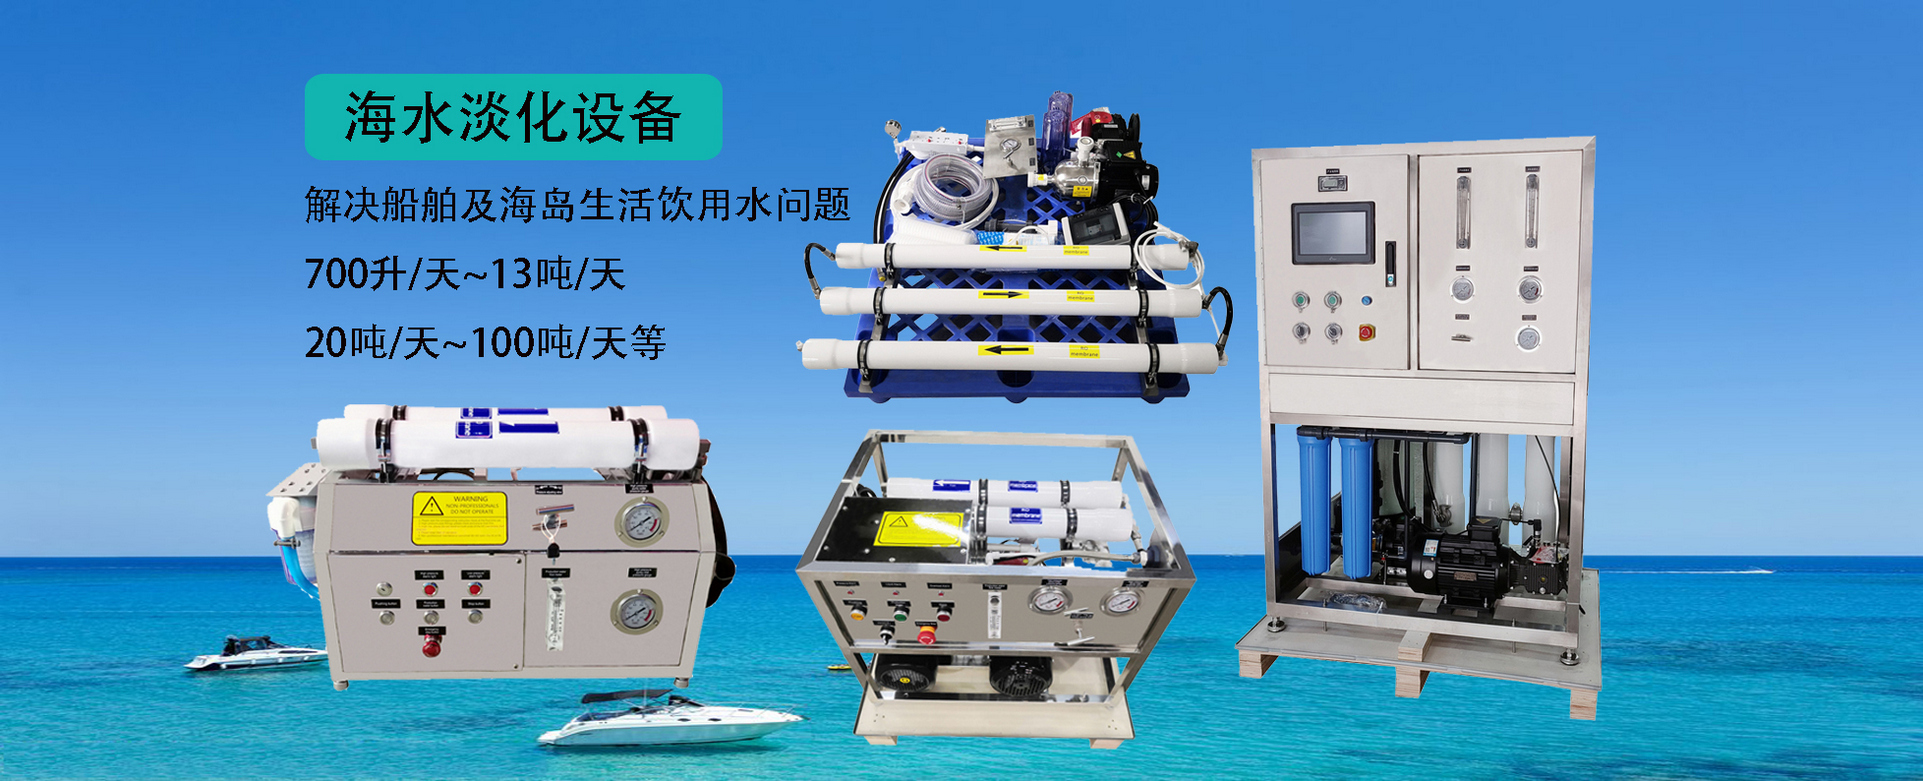 海水淡化设备,户外净水器,纯水处理设备